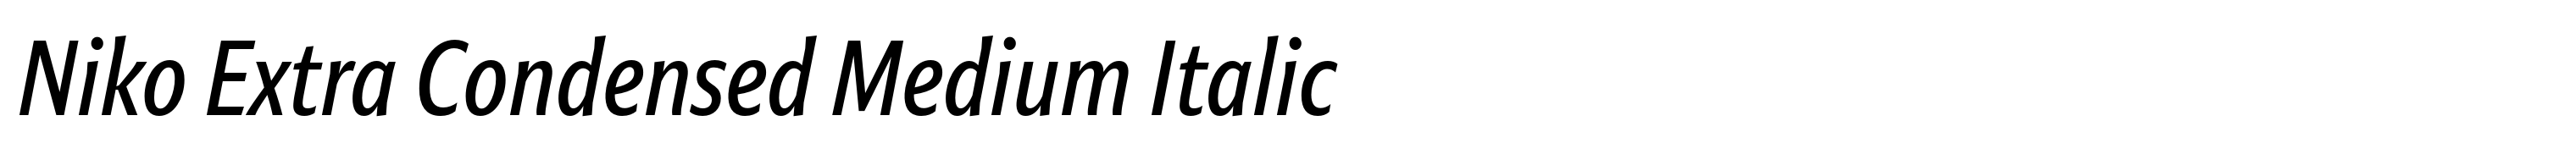 Niko Extra Condensed Medium Italic